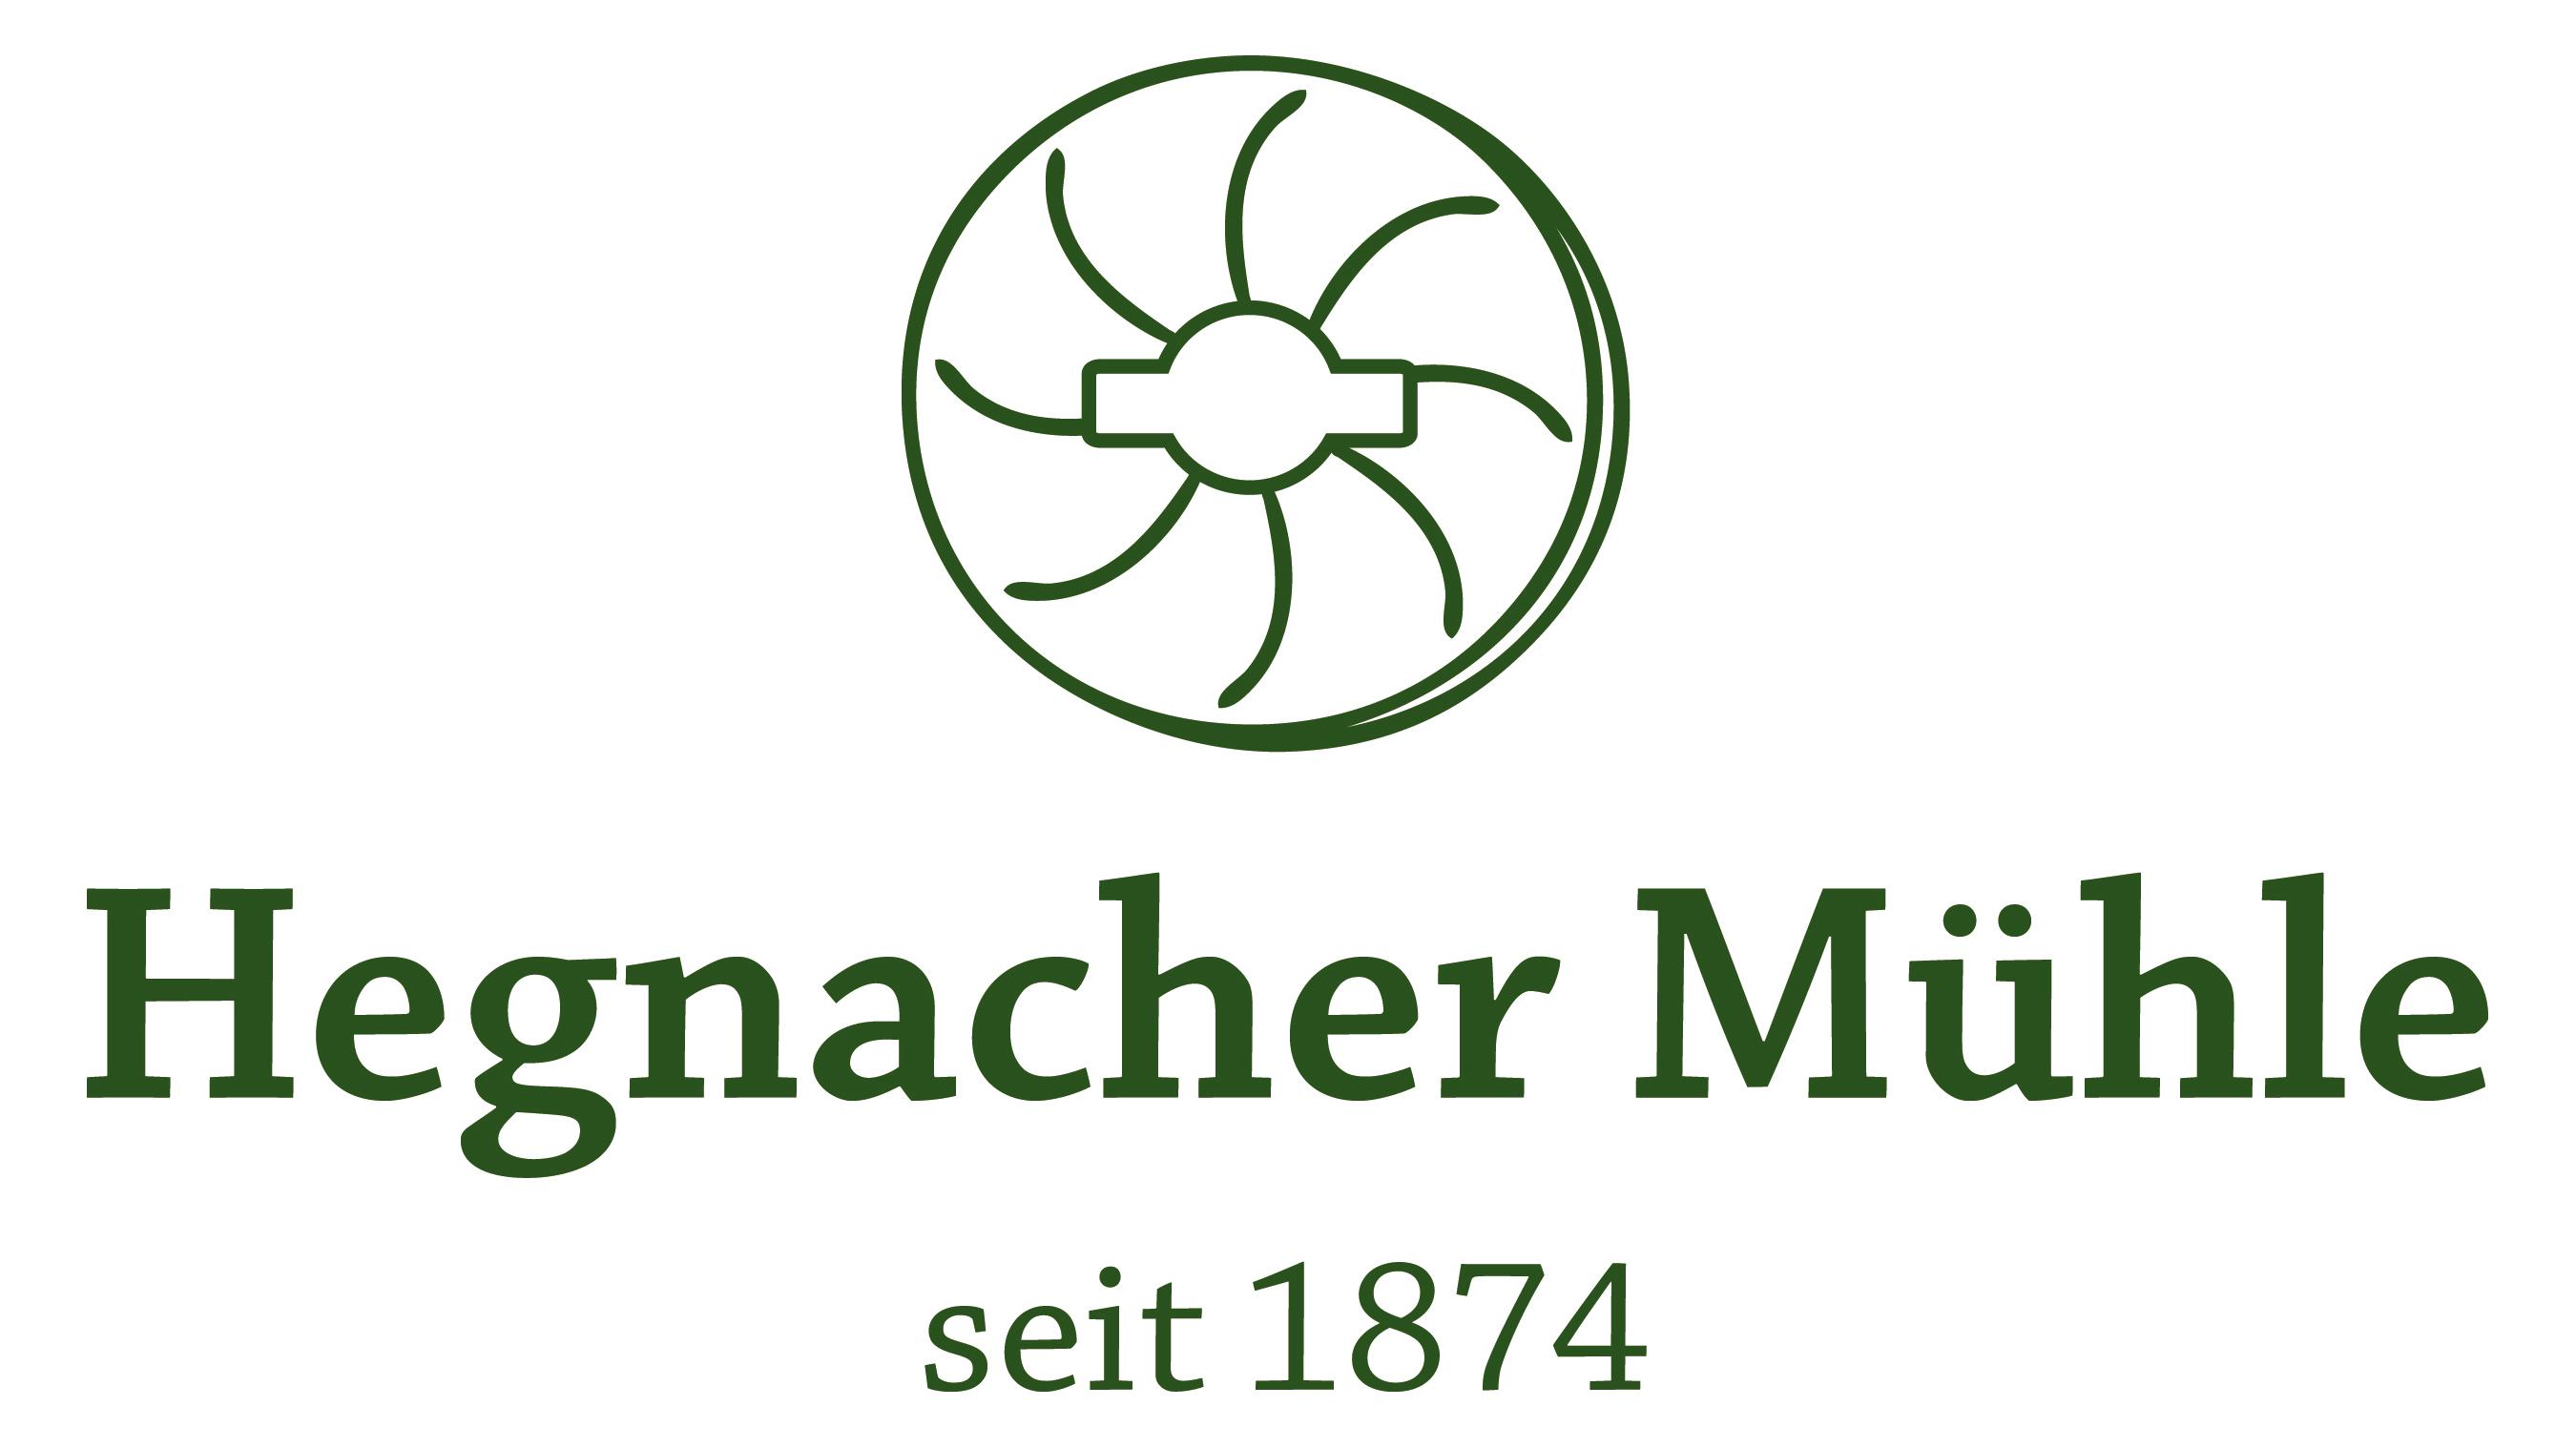 Hegnacher Mühle